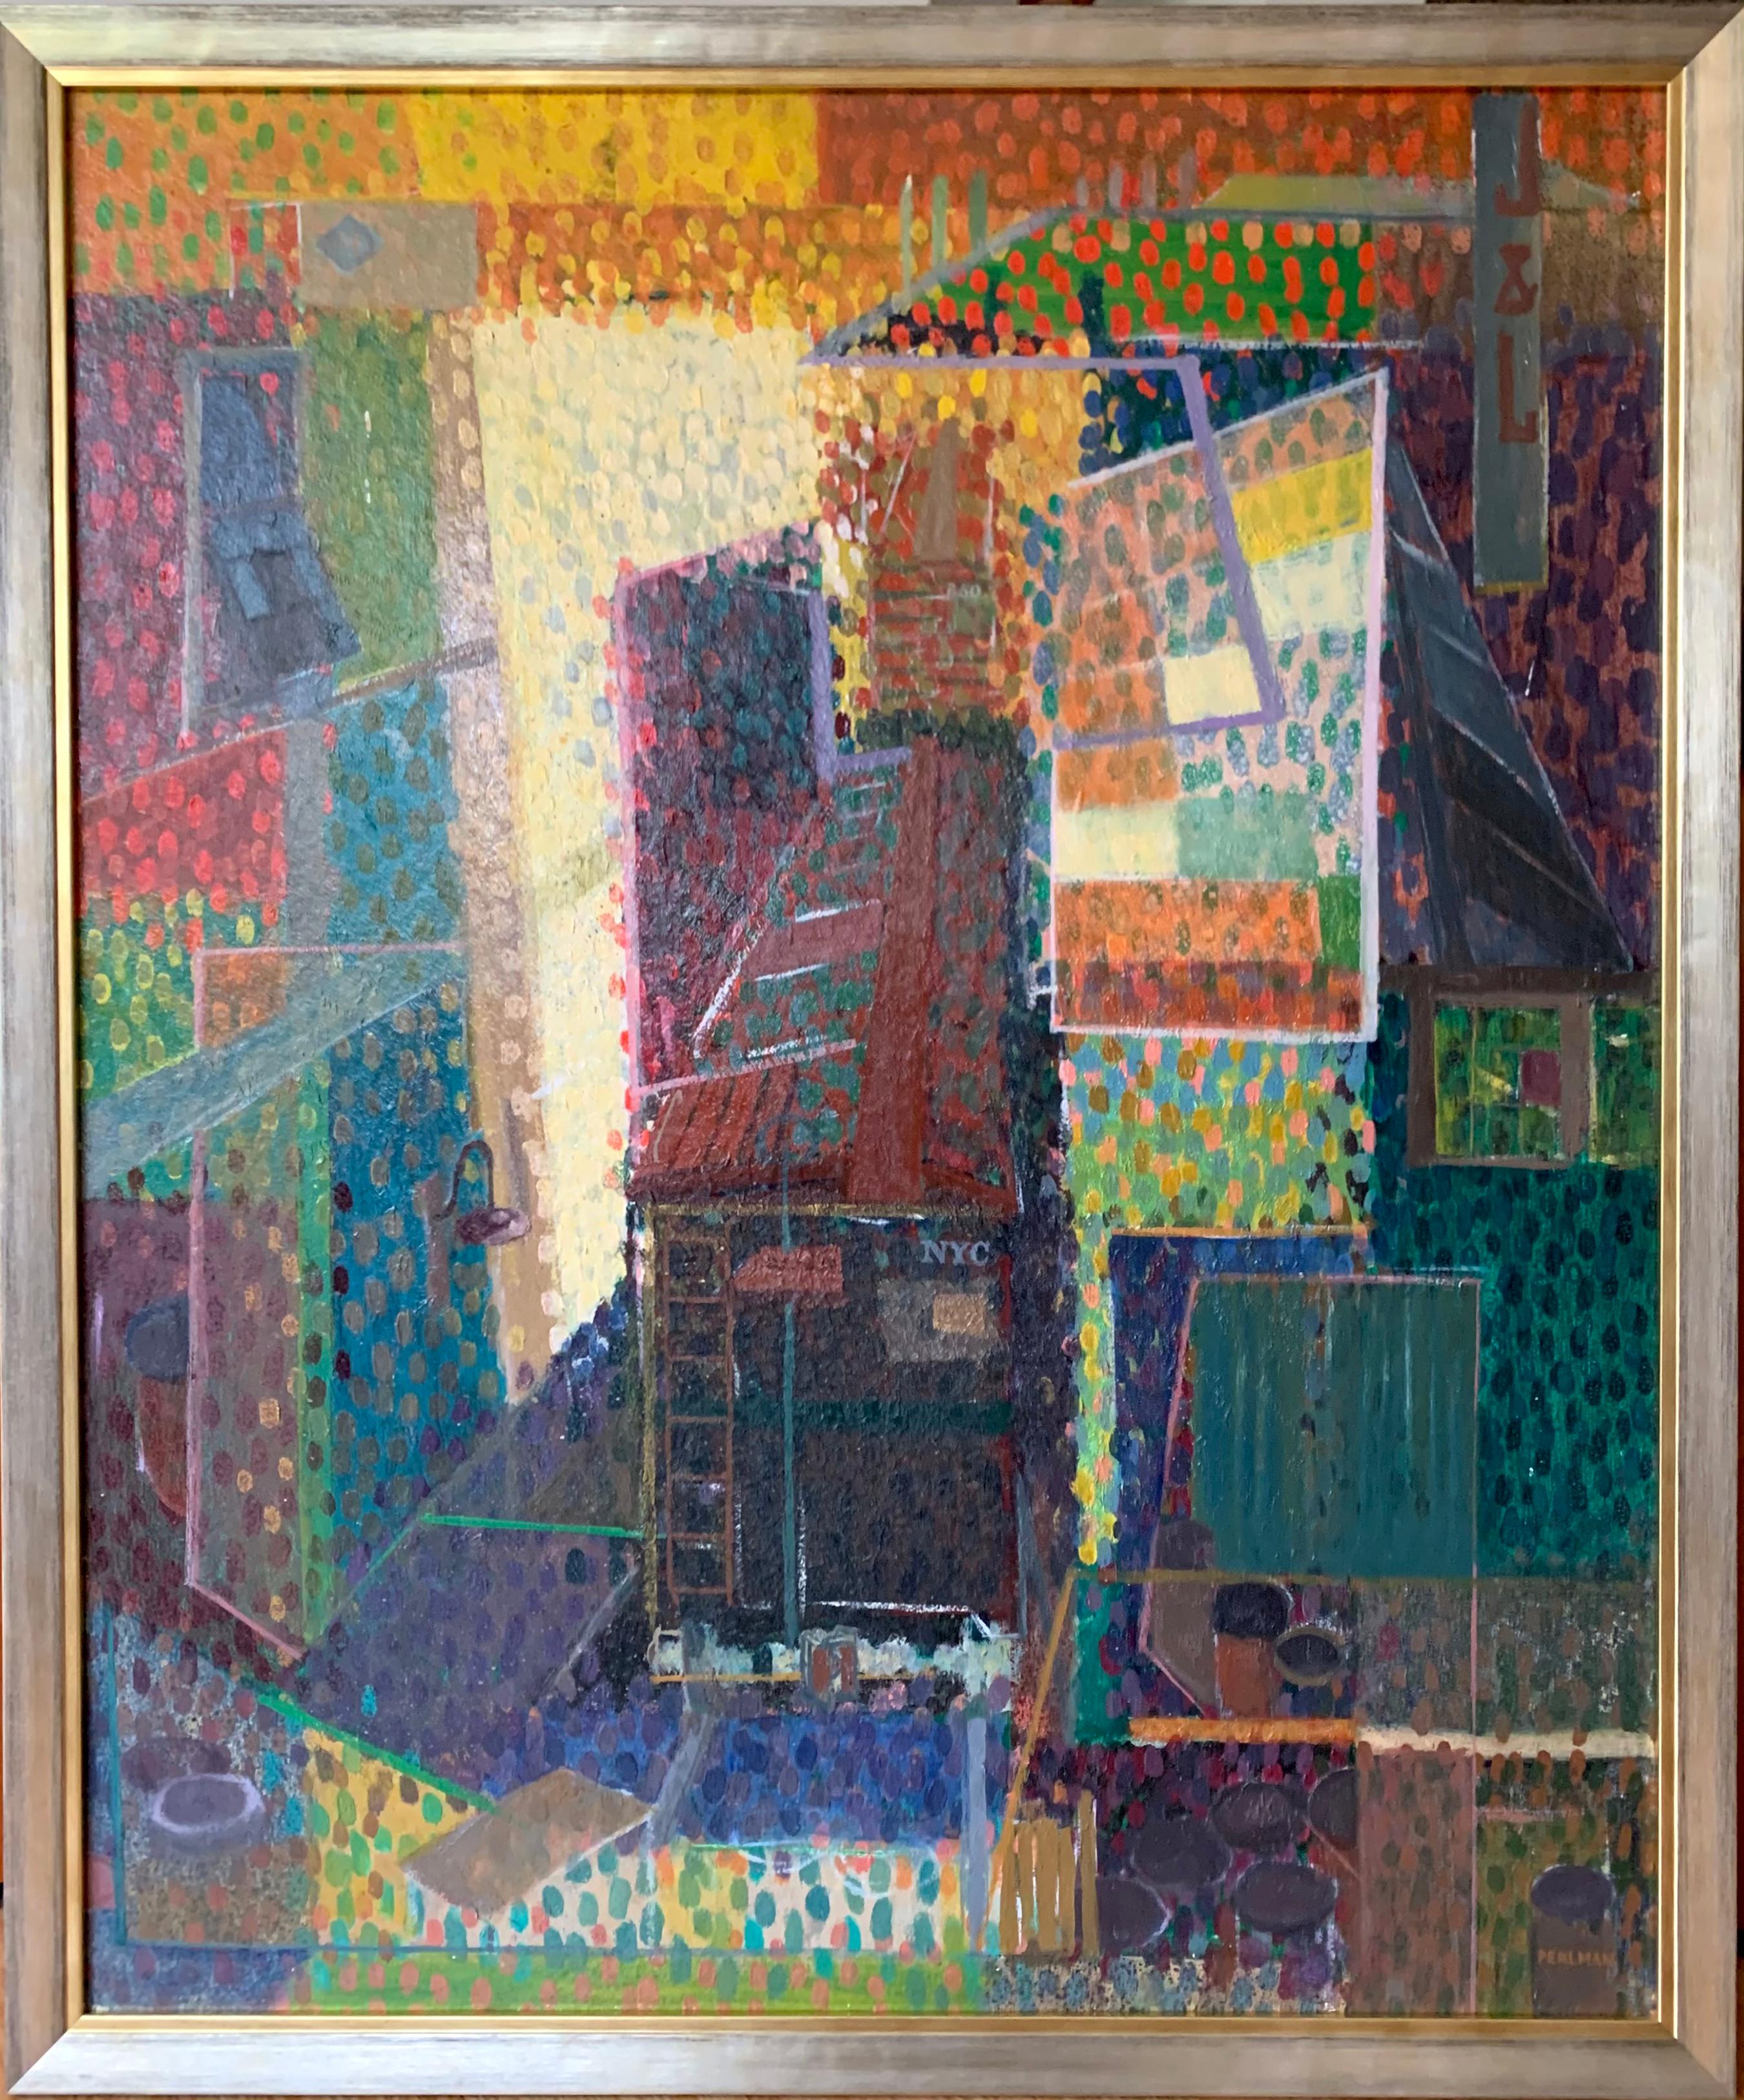 "Pointillistic Cityscape" est une peinture à l'huile moderniste sur panneau réalisée, comme le titre l'indique, dans un style pointilliste libre par l'artiste américain Bennard Perlman à la fin des années 60. L'œuvre est encadrée dans un cadre en